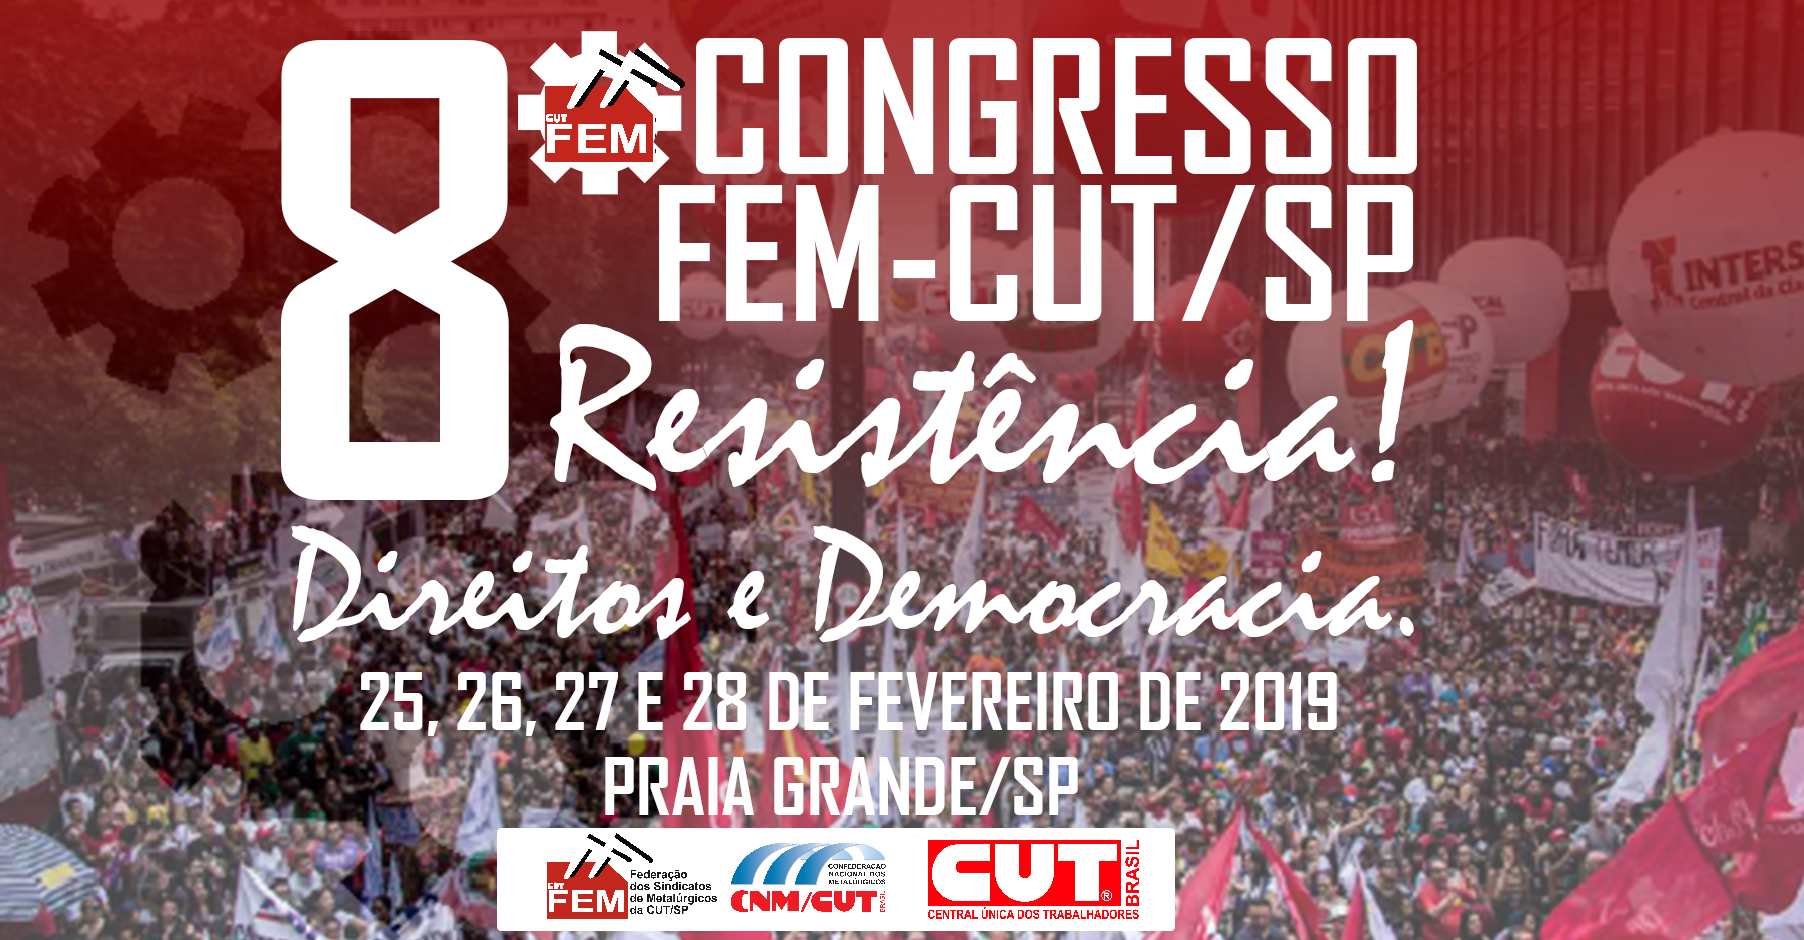 8 º Congresso da FEM-CUT/SP: Confira a programação